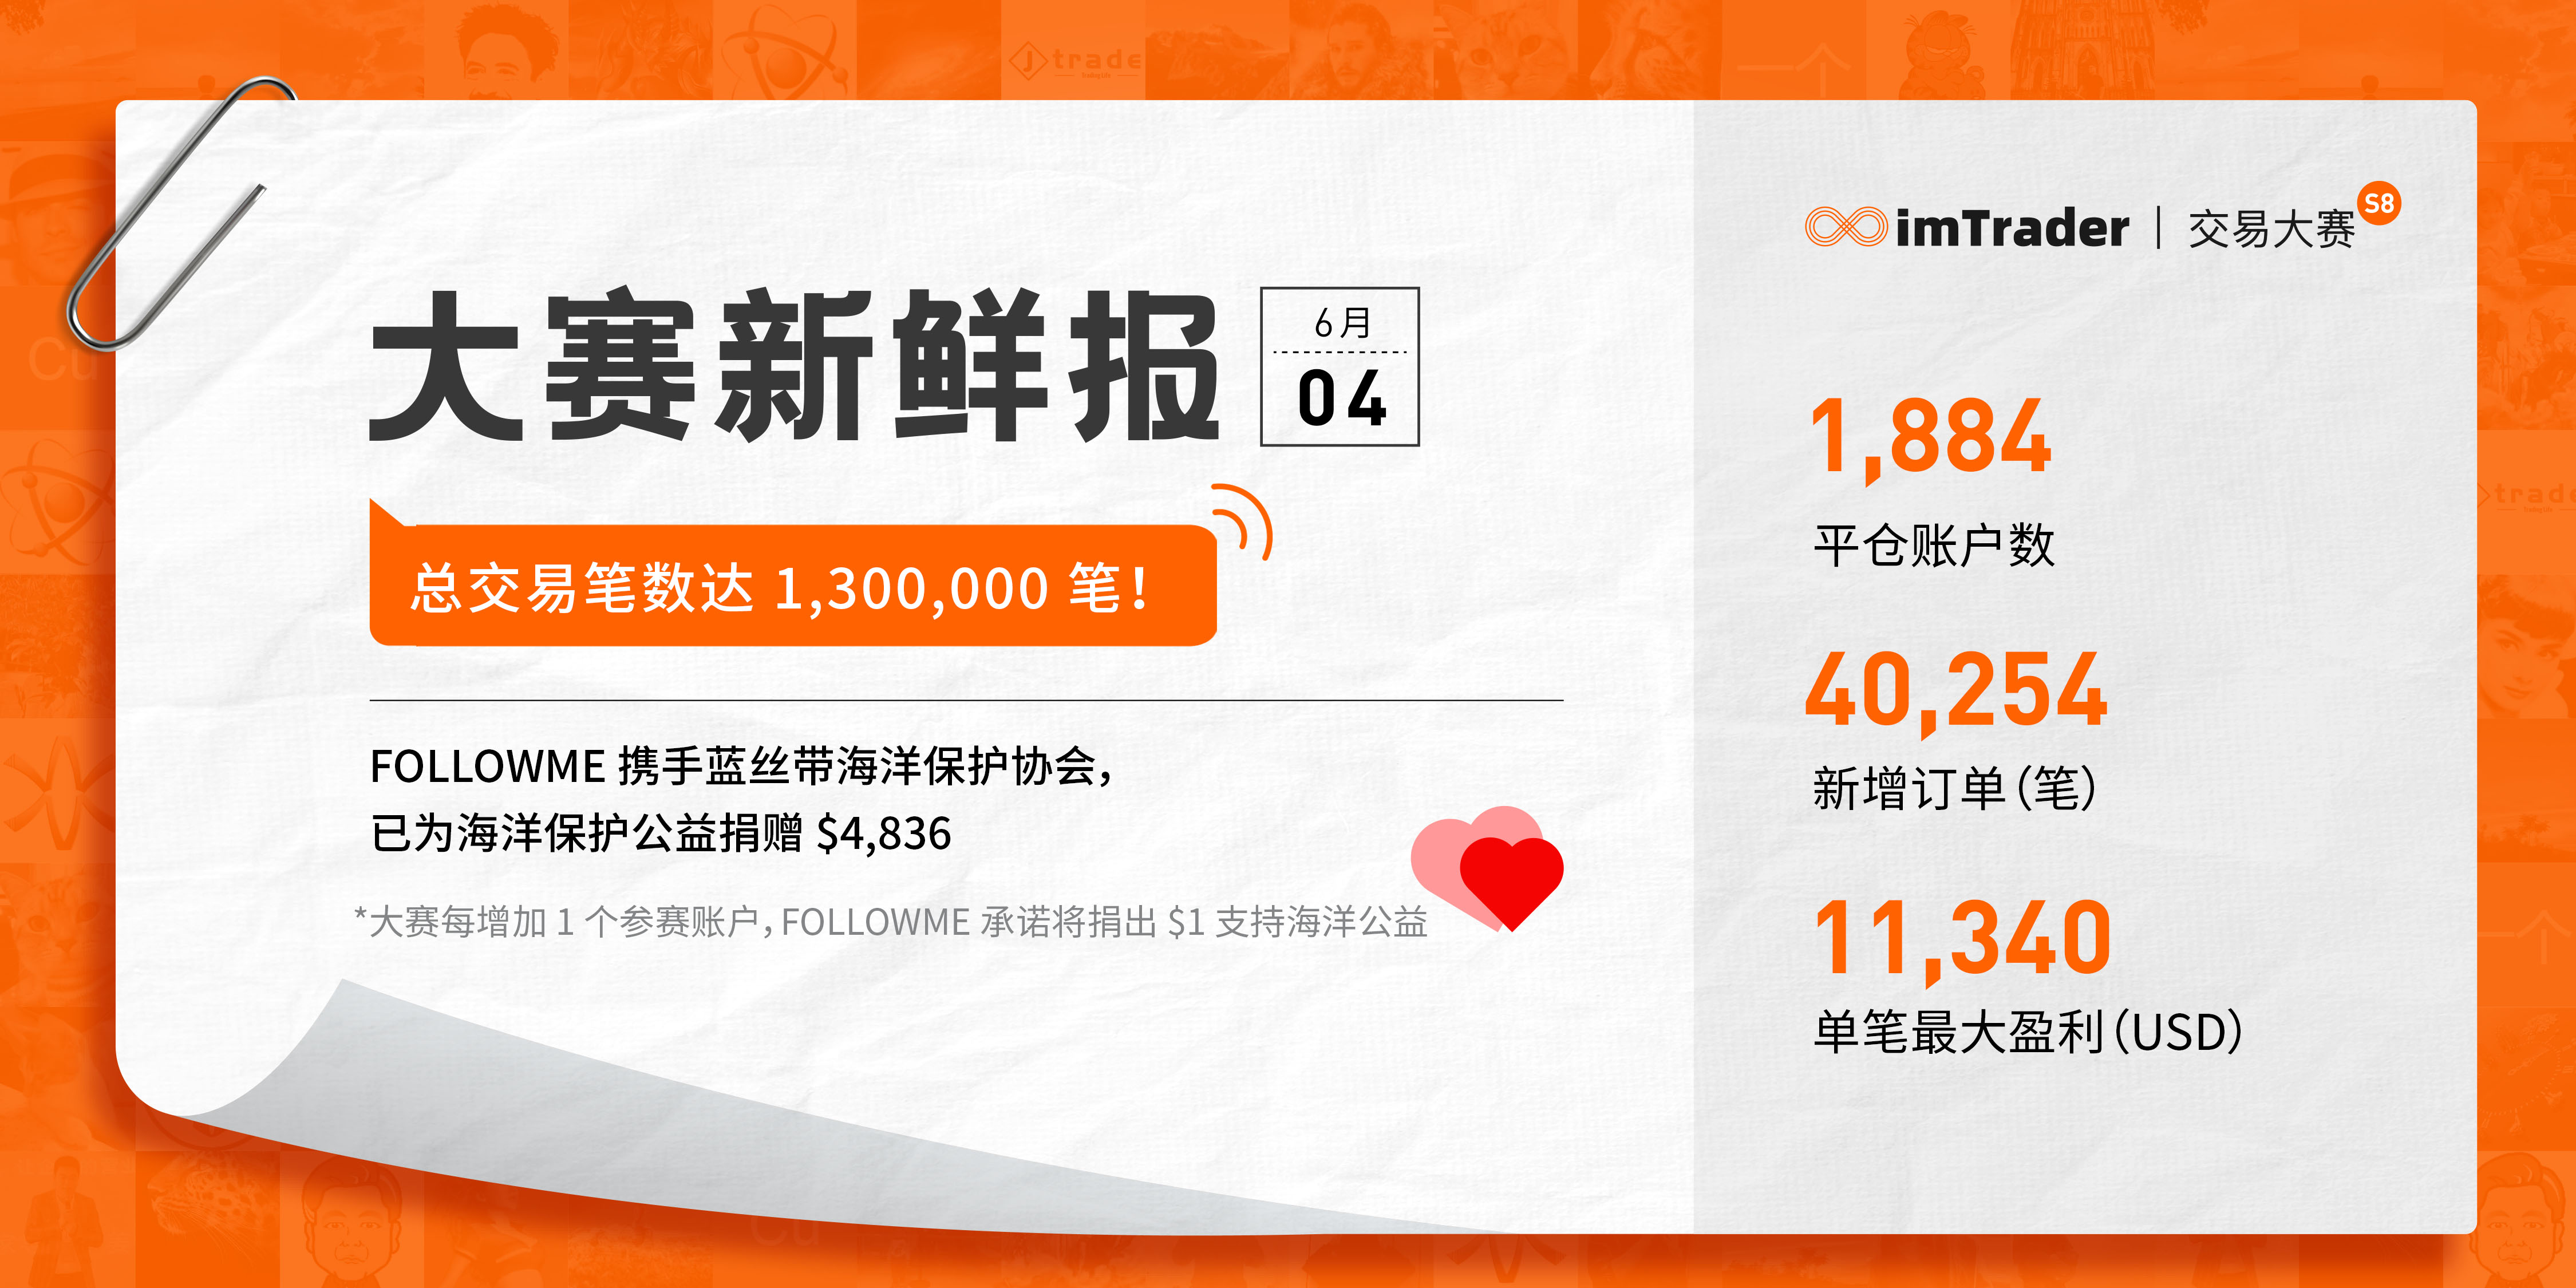 6月4日大赛新鲜报丨总交易笔数达 1,300,000 笔！